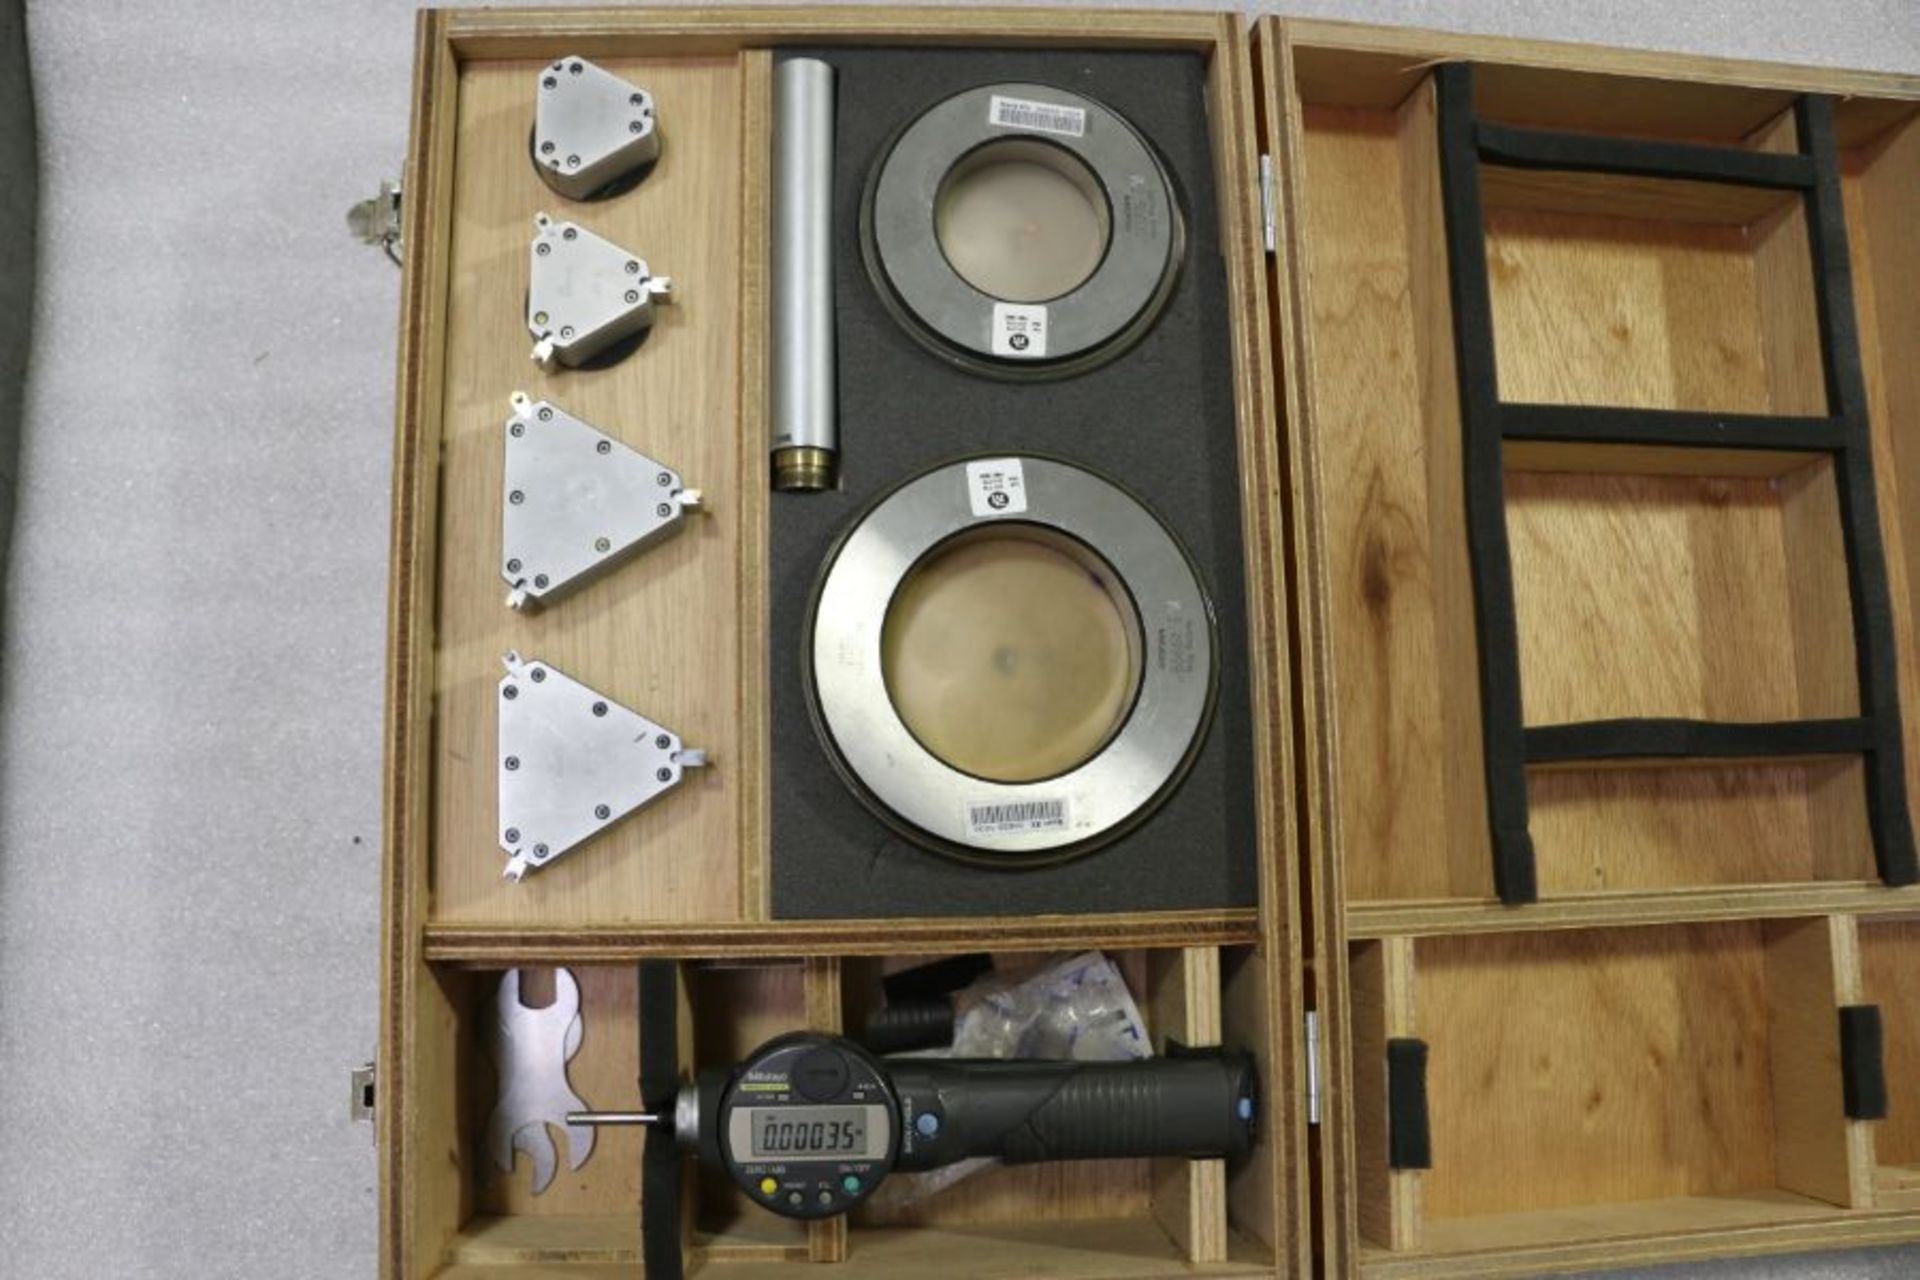 Mitutoyo 4" Digital Bore Micrometer Set - Image 3 of 3